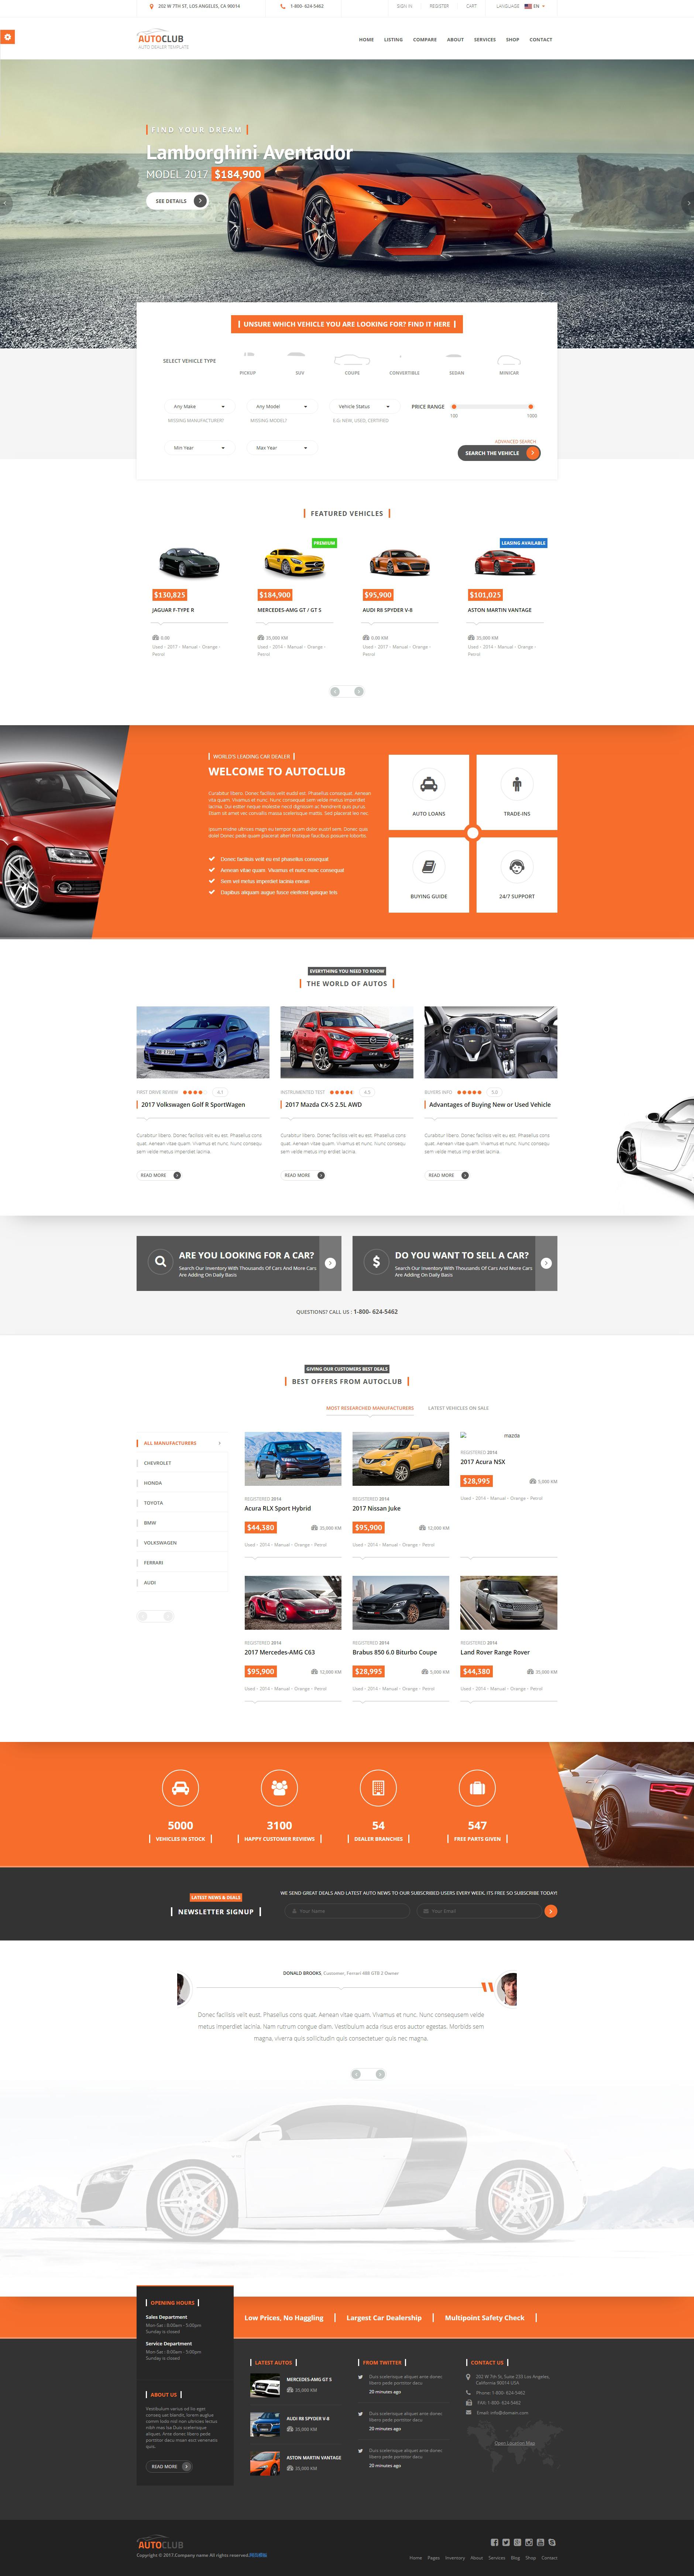 橙色大气的4S店汽车销售网站模板html整站